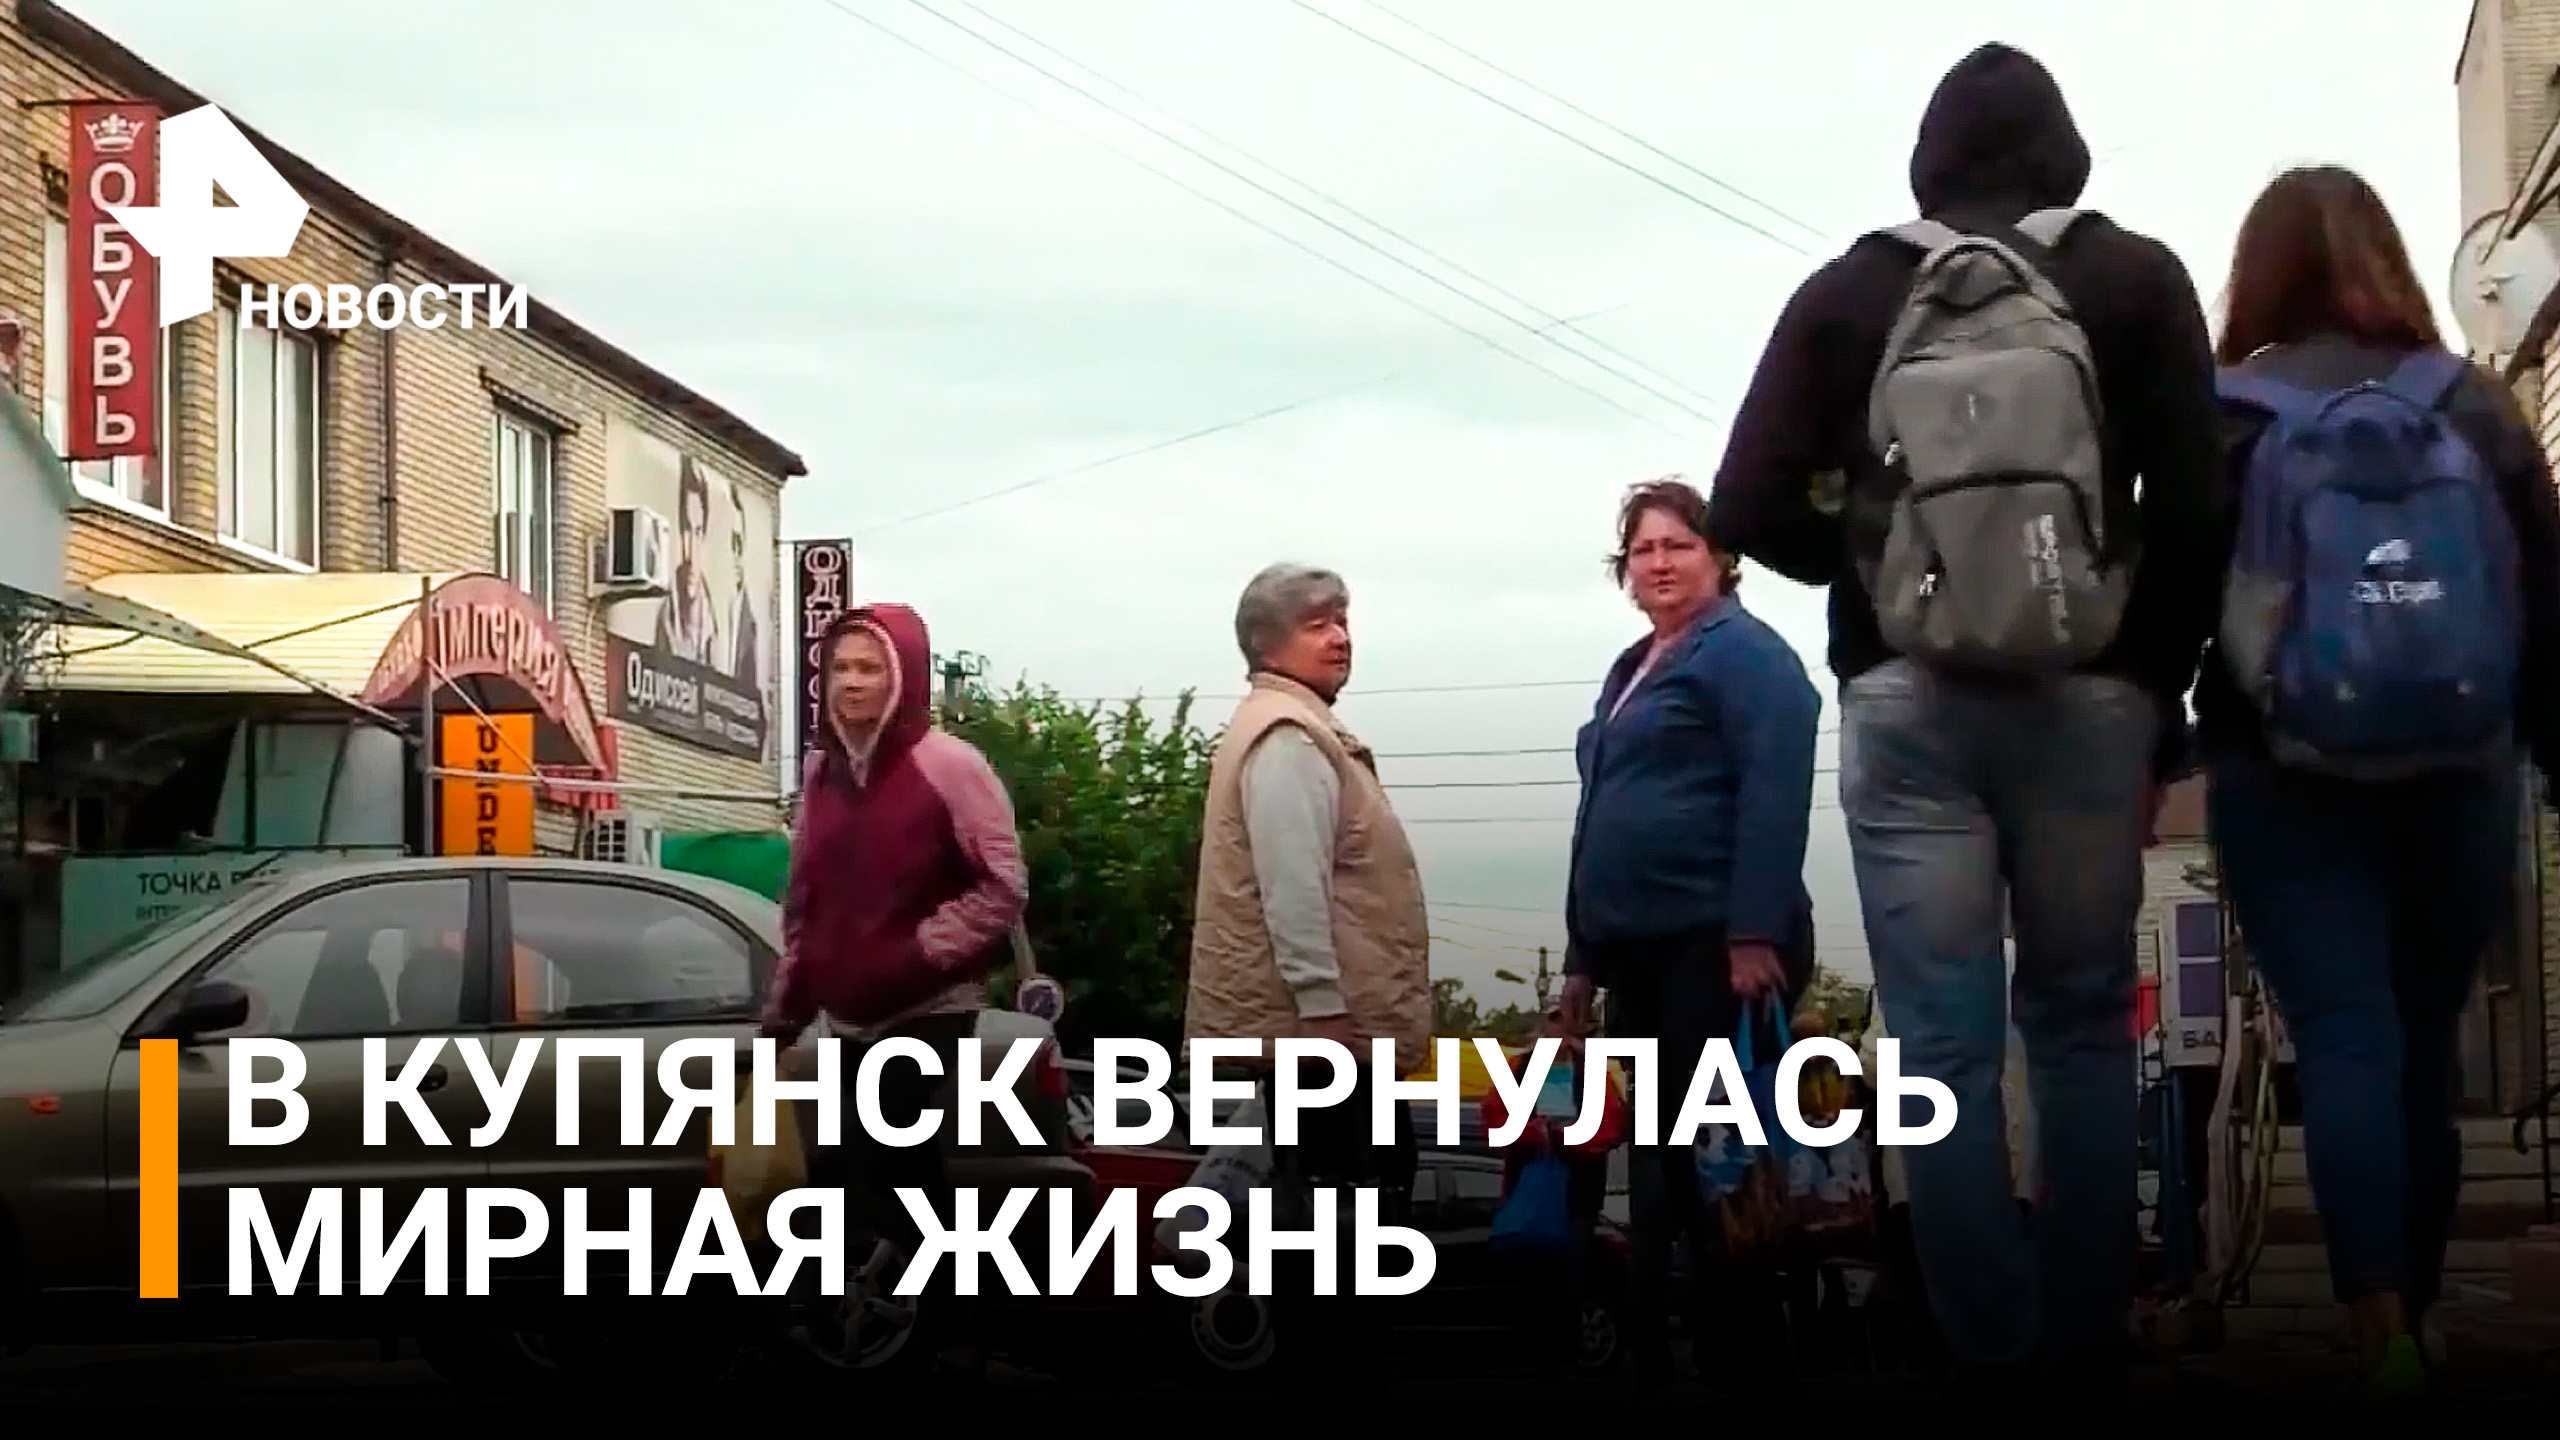 Киев оставил Купянск на грани нищеты / РЕН Новости